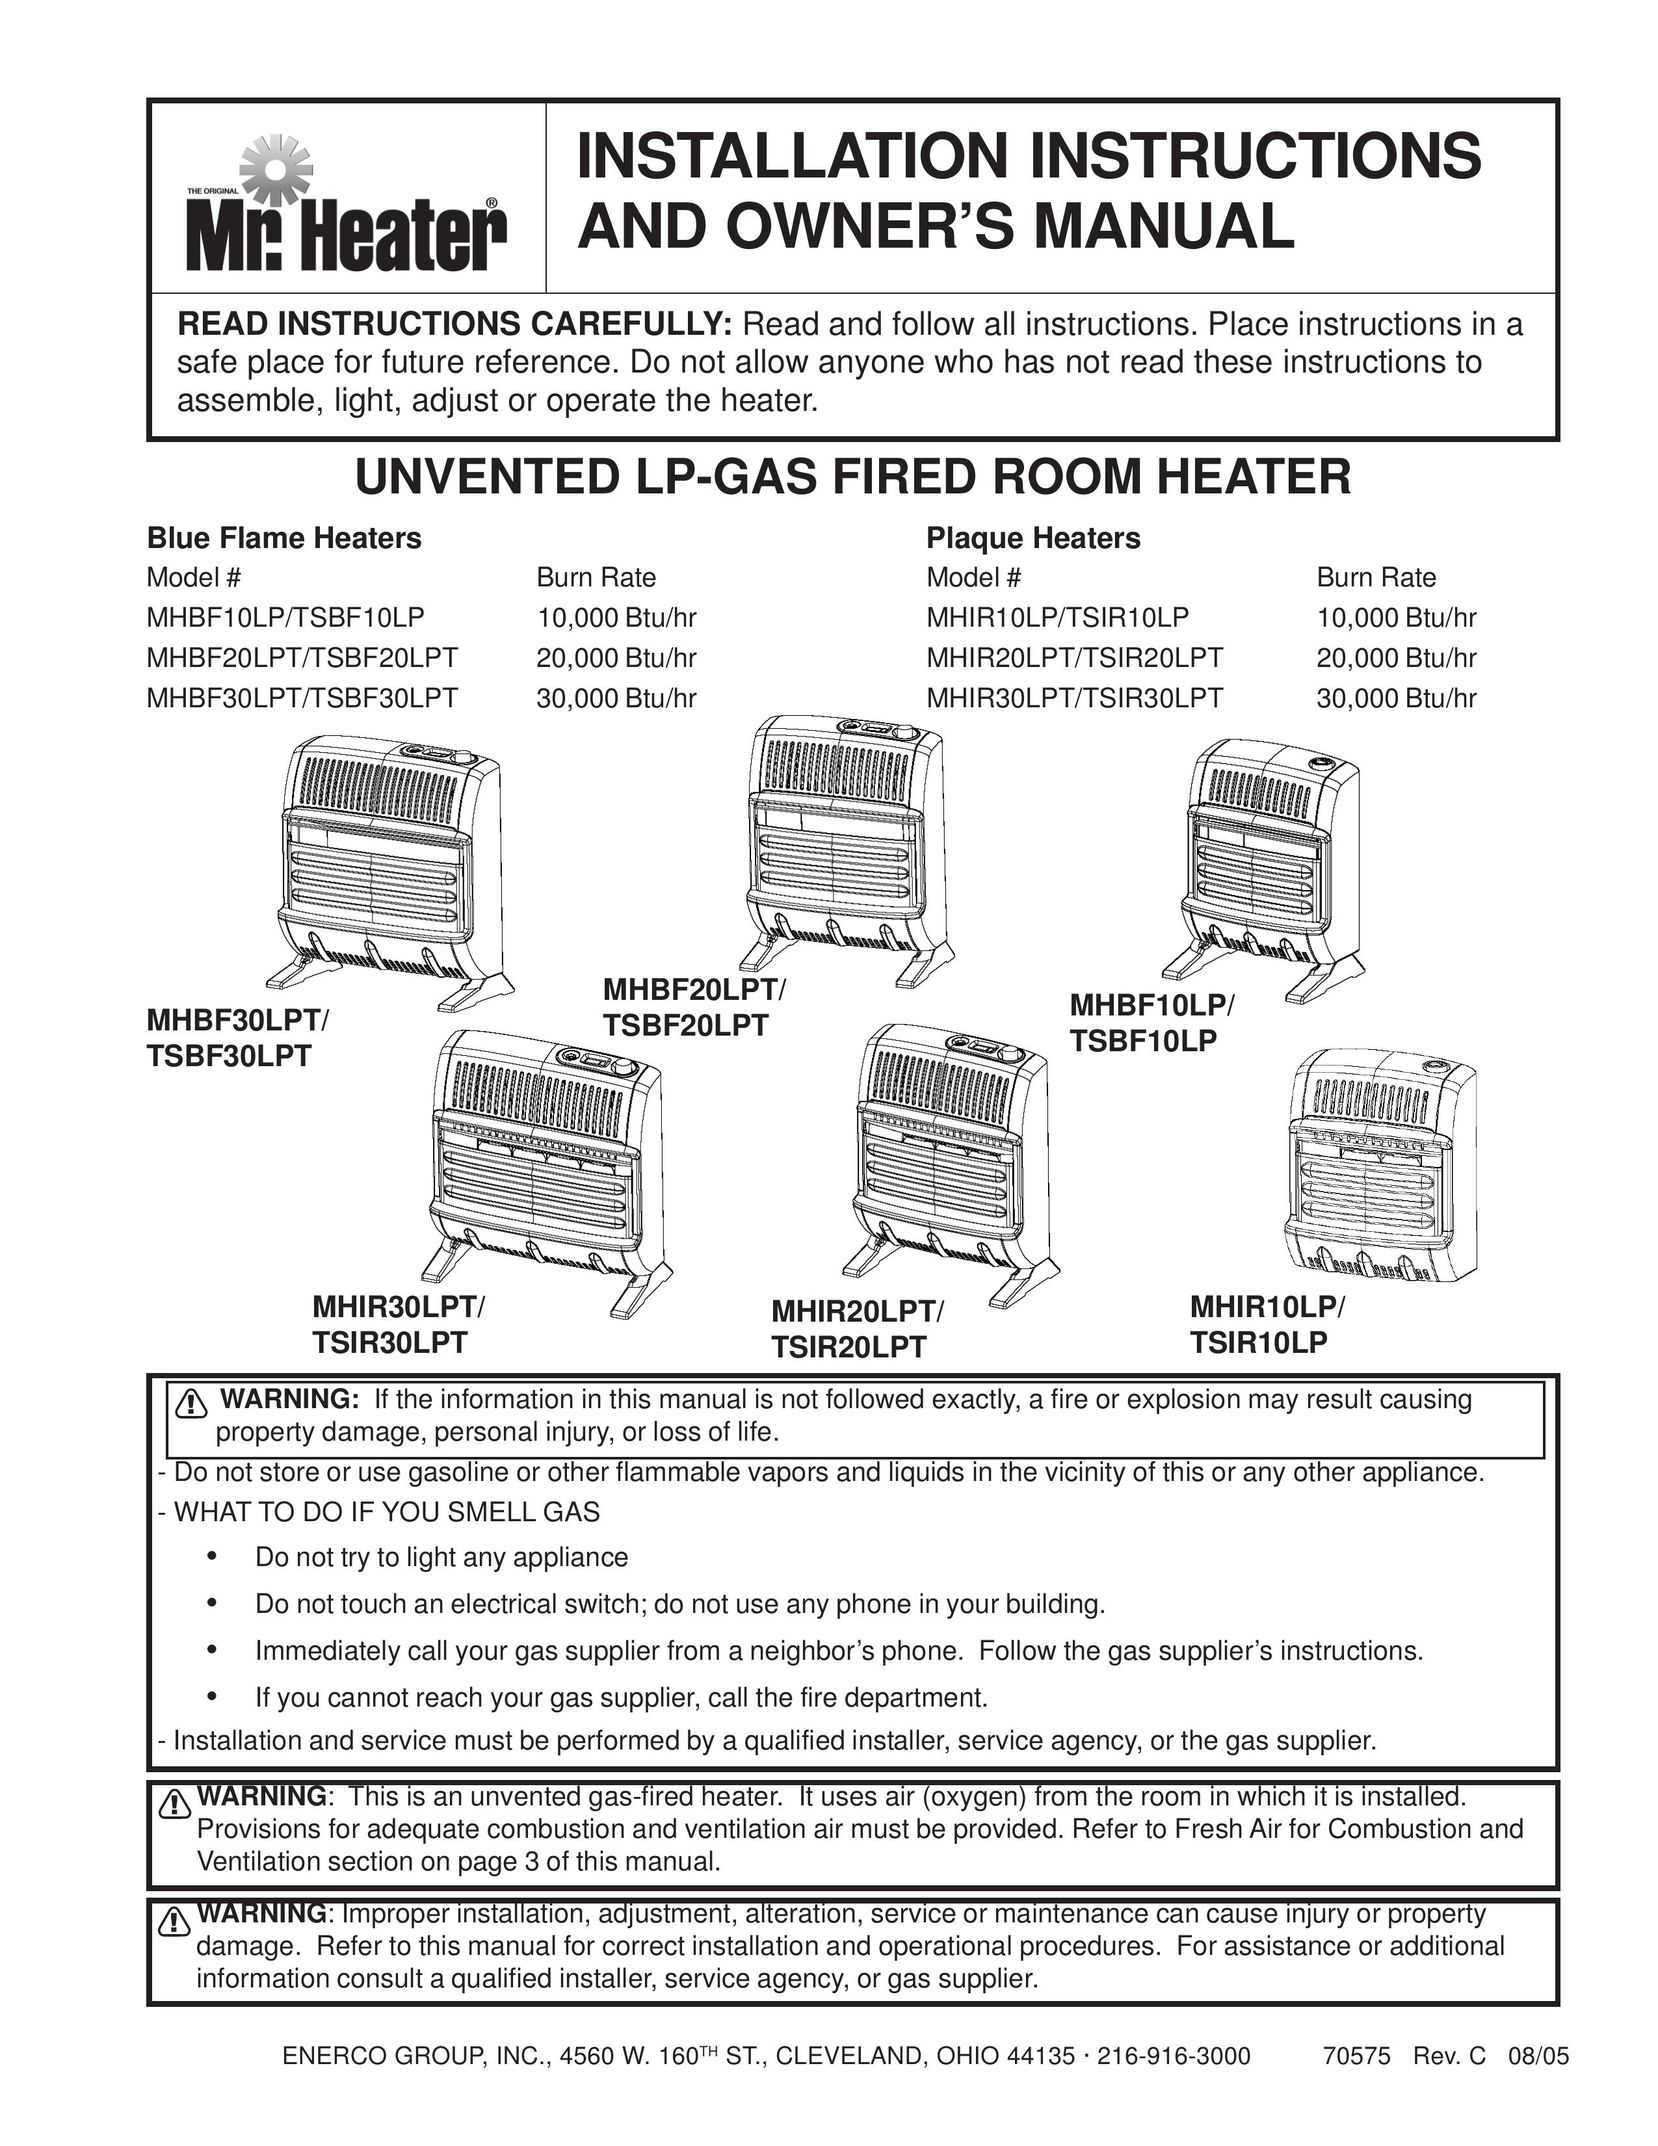 Enerco MHIR10LP Electric Heater User Manual